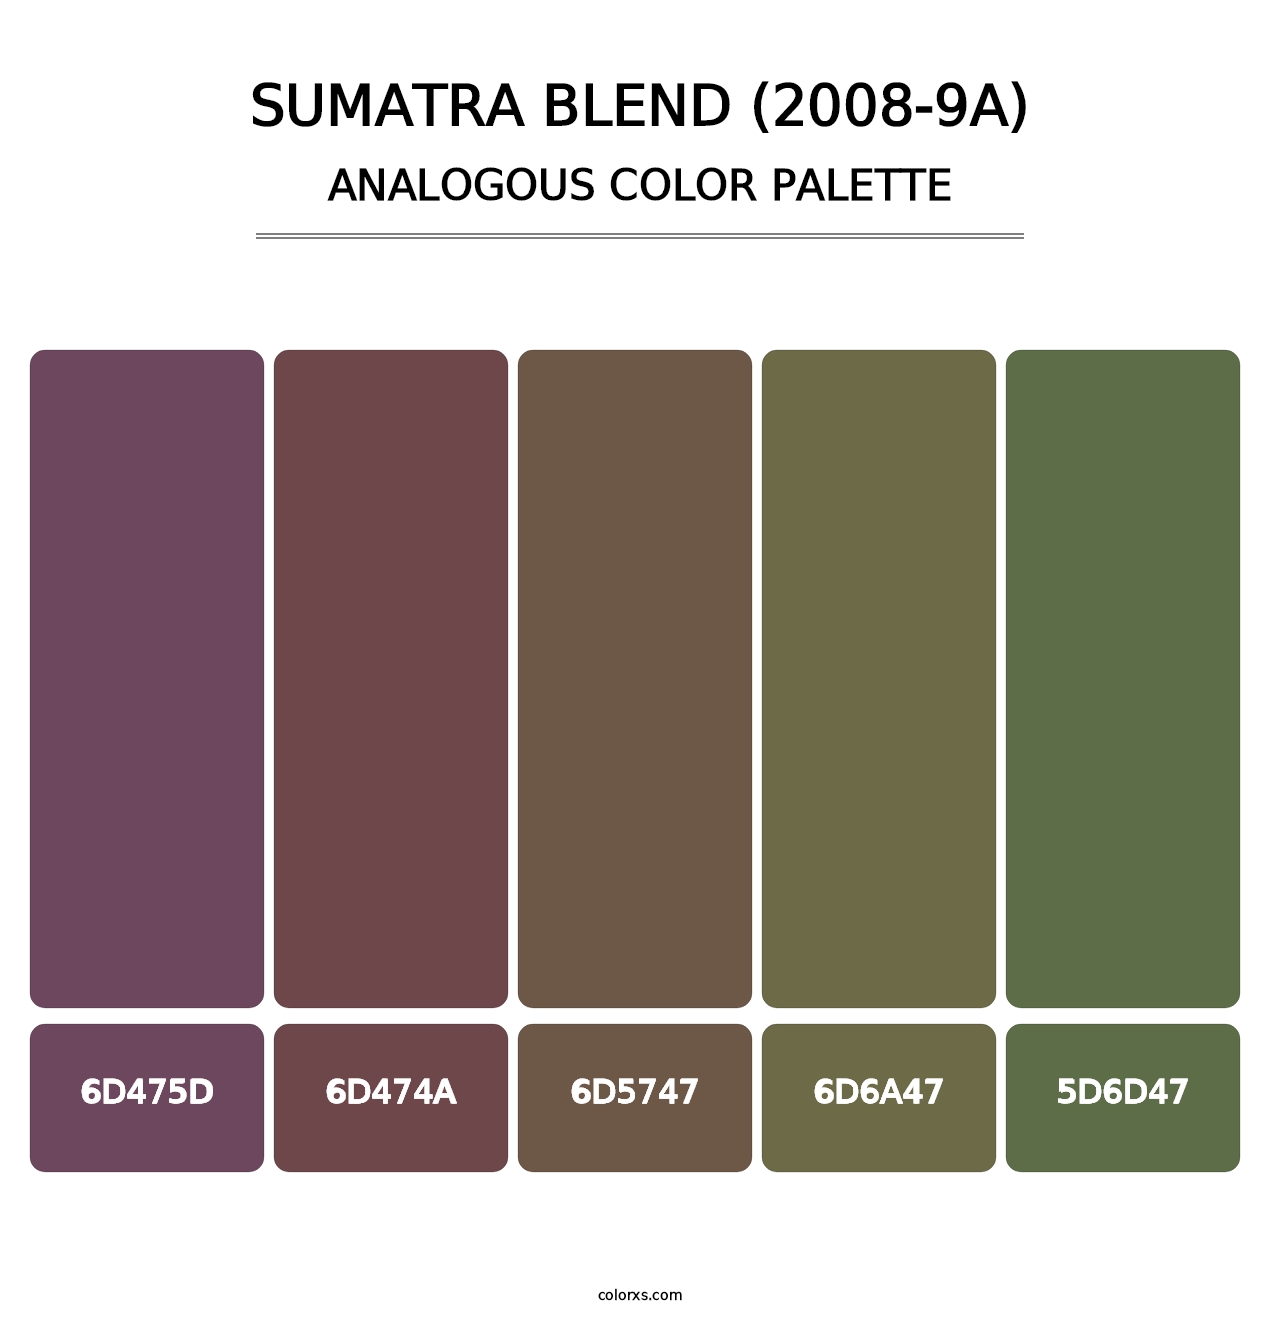 Sumatra Blend (2008-9A) - Analogous Color Palette